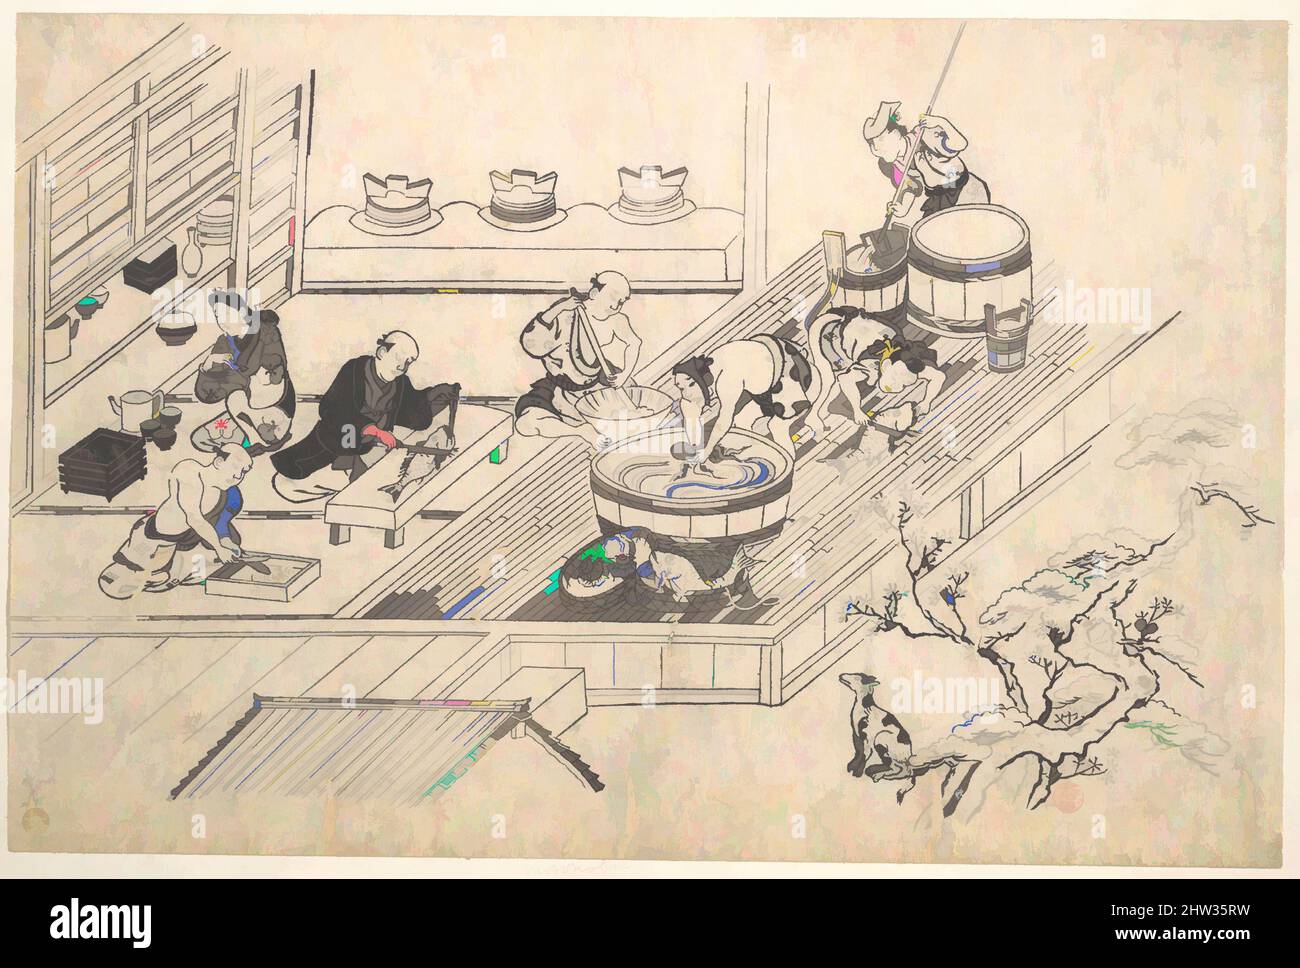 Art inspiré par la cuisine d'un Joroya., époque Edo (1615–1868), env. 1680, Japon, imprimé polychrome sur bois ; encre et couleur sur papier, 10 1/8 x 15 1/5 po. (25,7 x 38,6 cm), estampes, Hishikawa Moronobu (japonais, mort en 1694), la préparation de nourriture dans la cuisine d'un salon de thé est présentée, oeuvres classiques modernisées par Artotop avec un peu de modernité. Formes, couleur et valeur, impact visuel accrocheur sur l'art émotions par la liberté d'œuvres d'art d'une manière contemporaine. Un message intemporel qui cherche une nouvelle direction créative. Artistes qui se tournent vers le support numérique et créent le NFT Artotop Banque D'Images